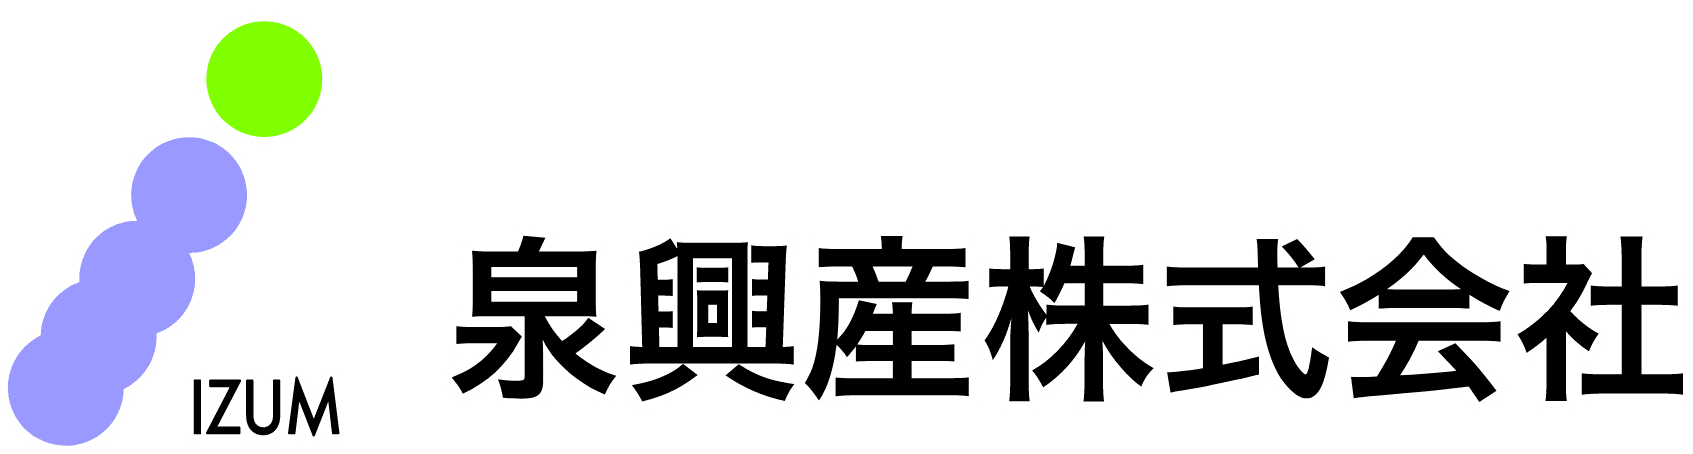 泉興産株式会社のホームページ